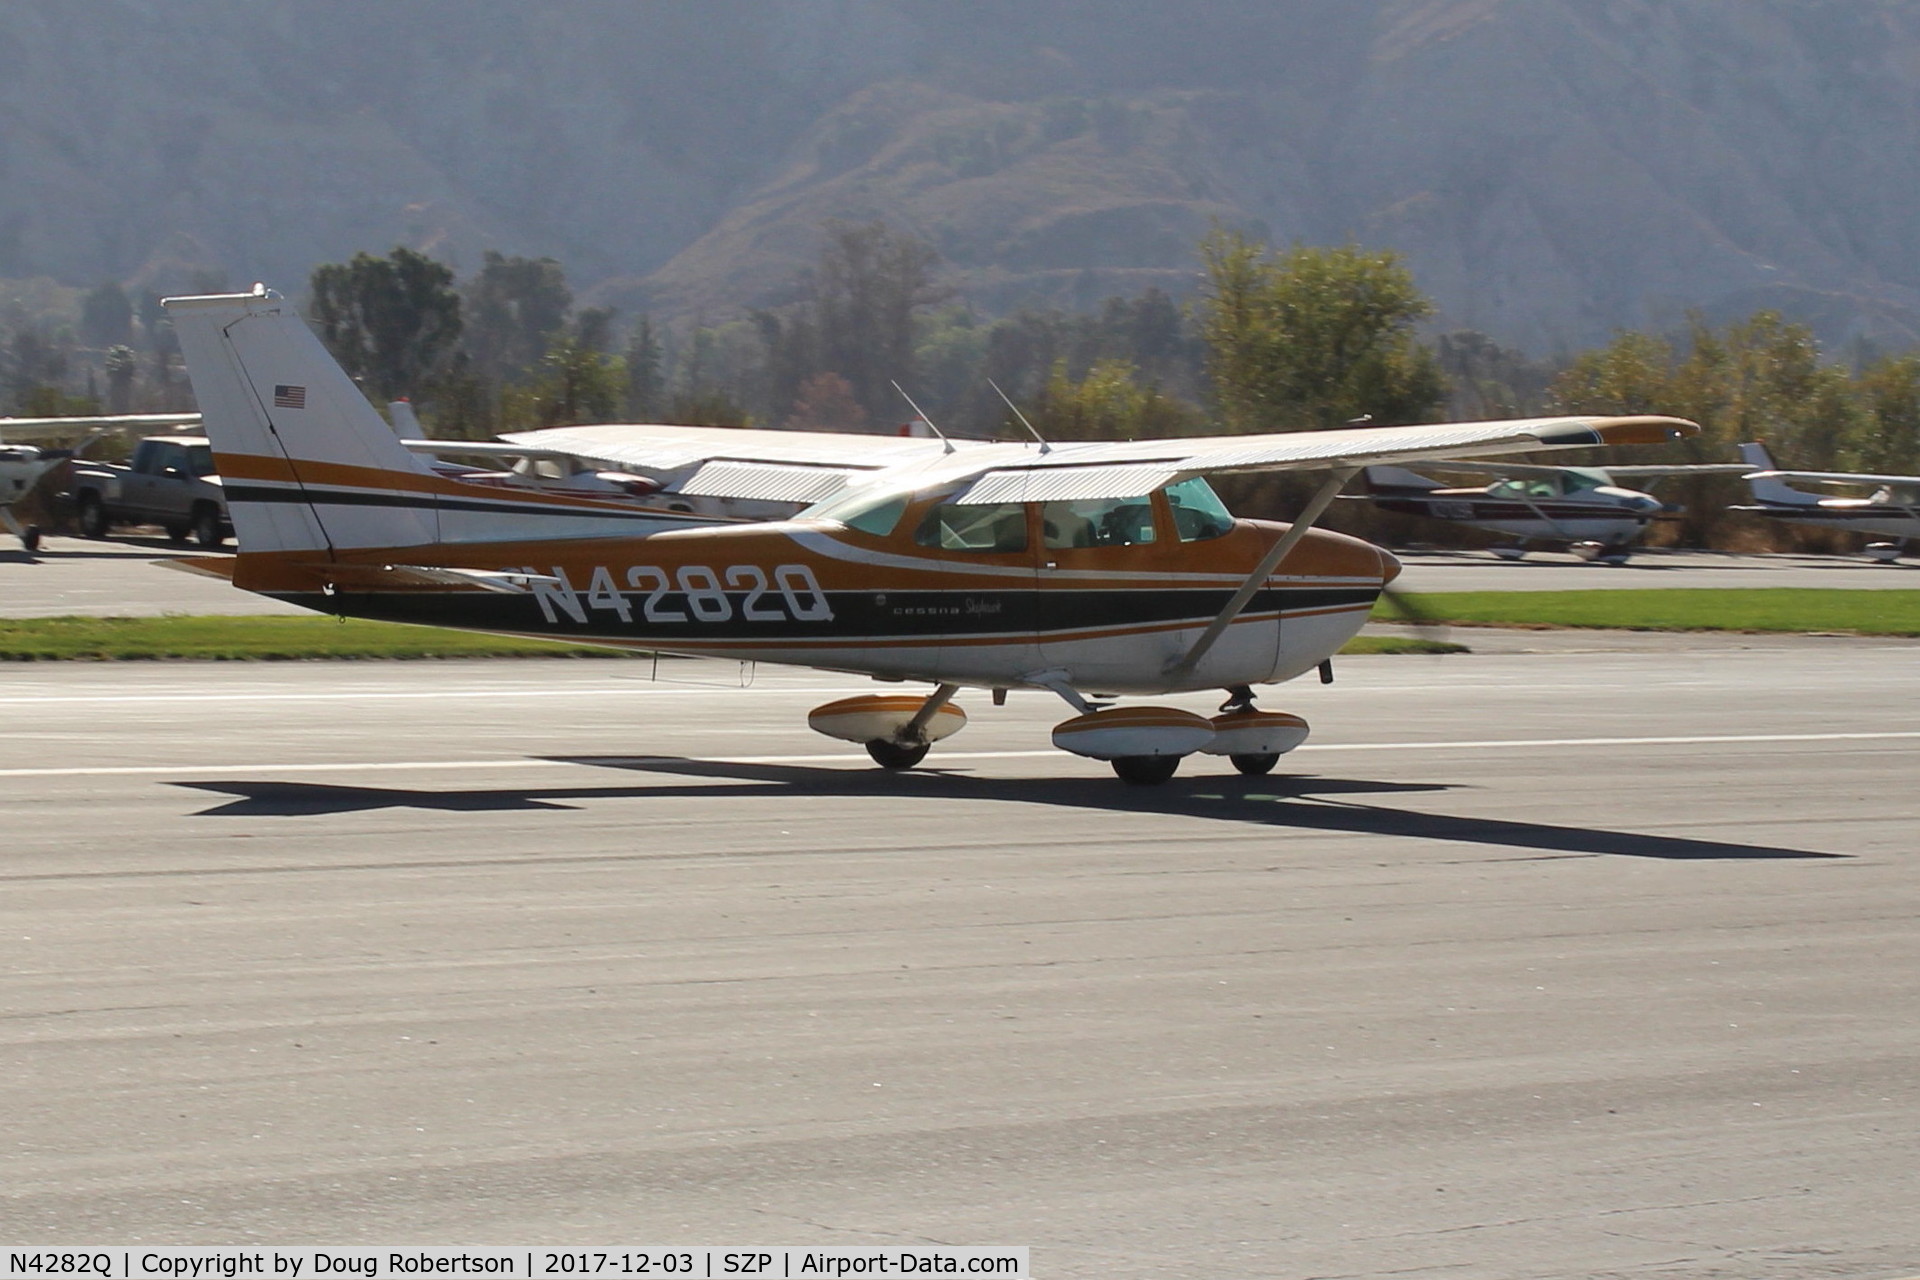 N4282Q, 1971 Cessna 172L C/N 17260182, 1971 Cessna 172L SKYHAWK, Lycoming O-320-E2D 150 Hp, taxi off the active